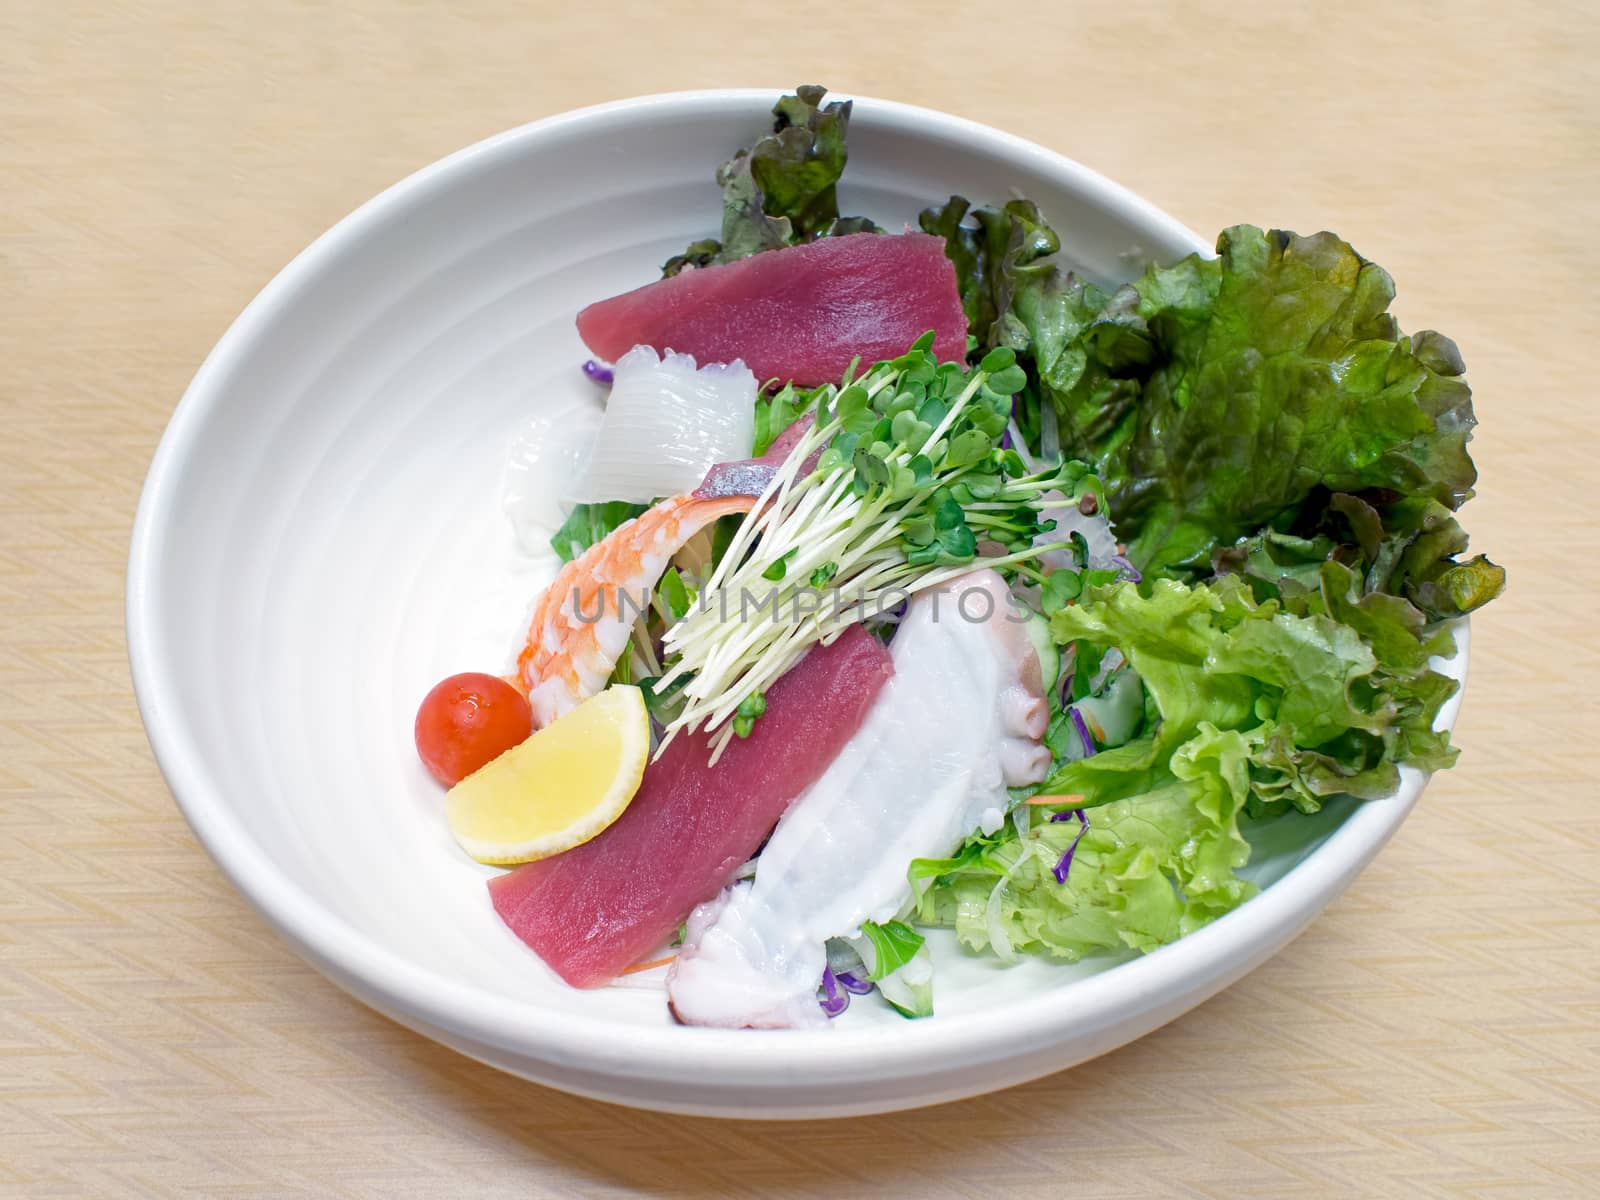 japanese fresh seafood salad by zkruger